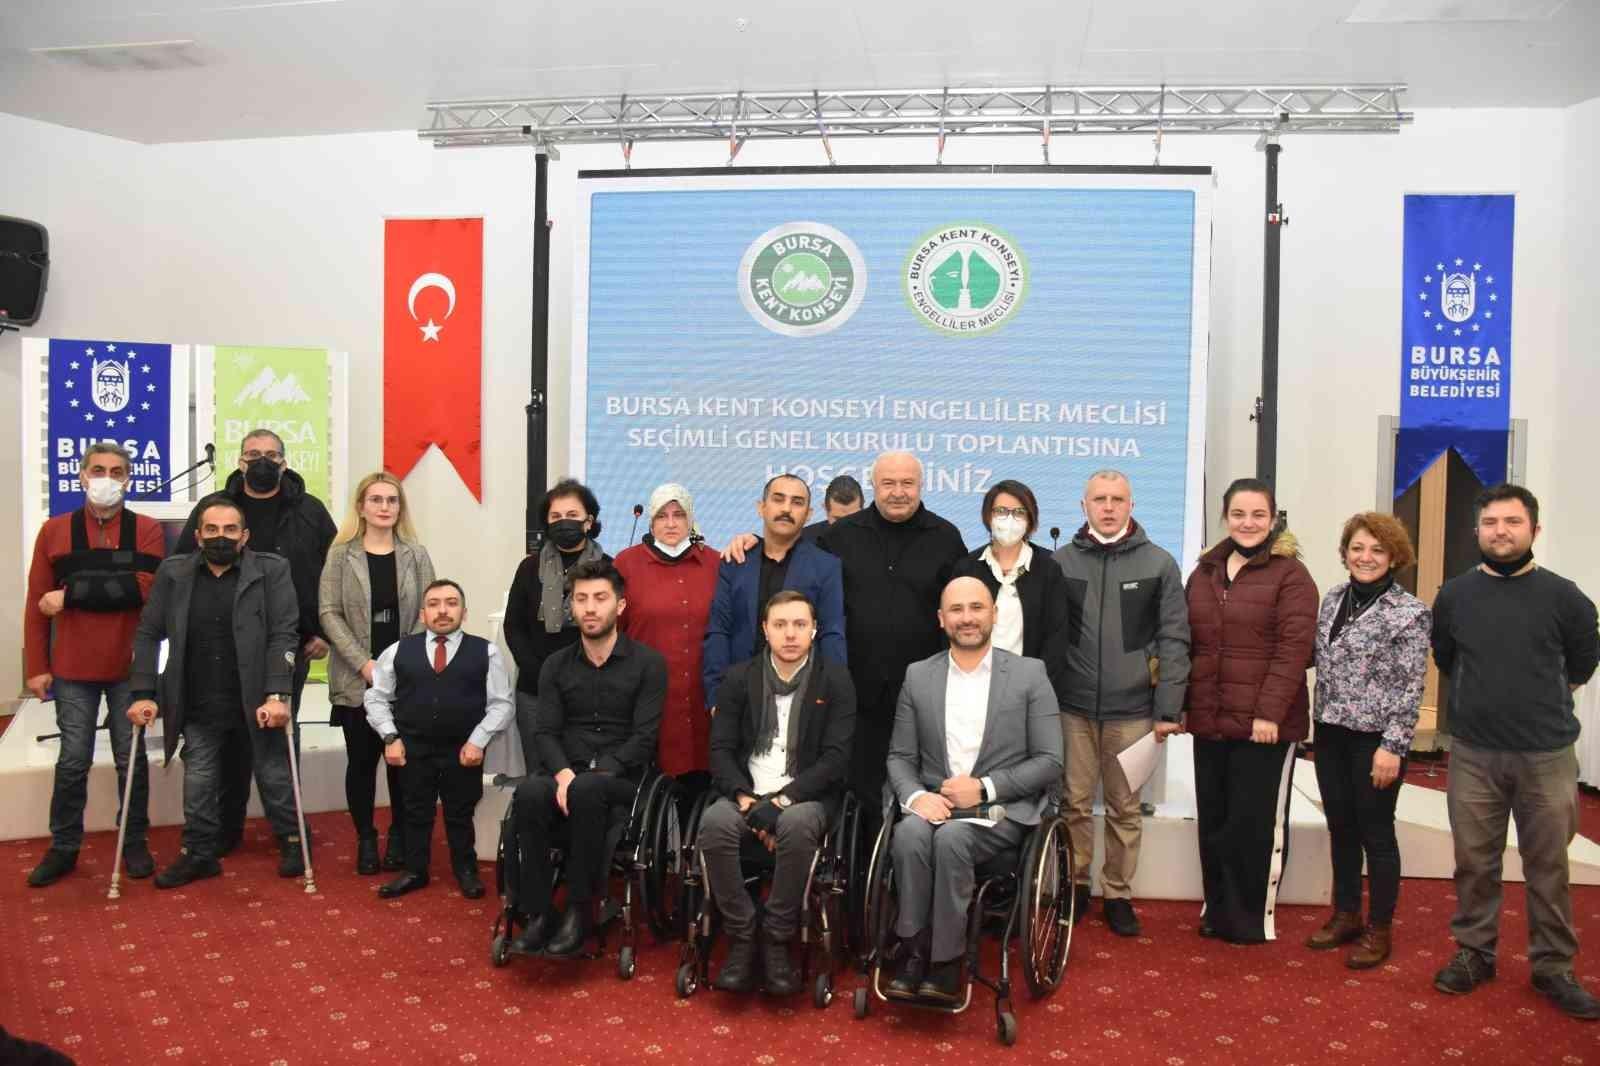 Bursa’da engelliler meclisi, ‘Sönmez’le devam’ kararı verdi